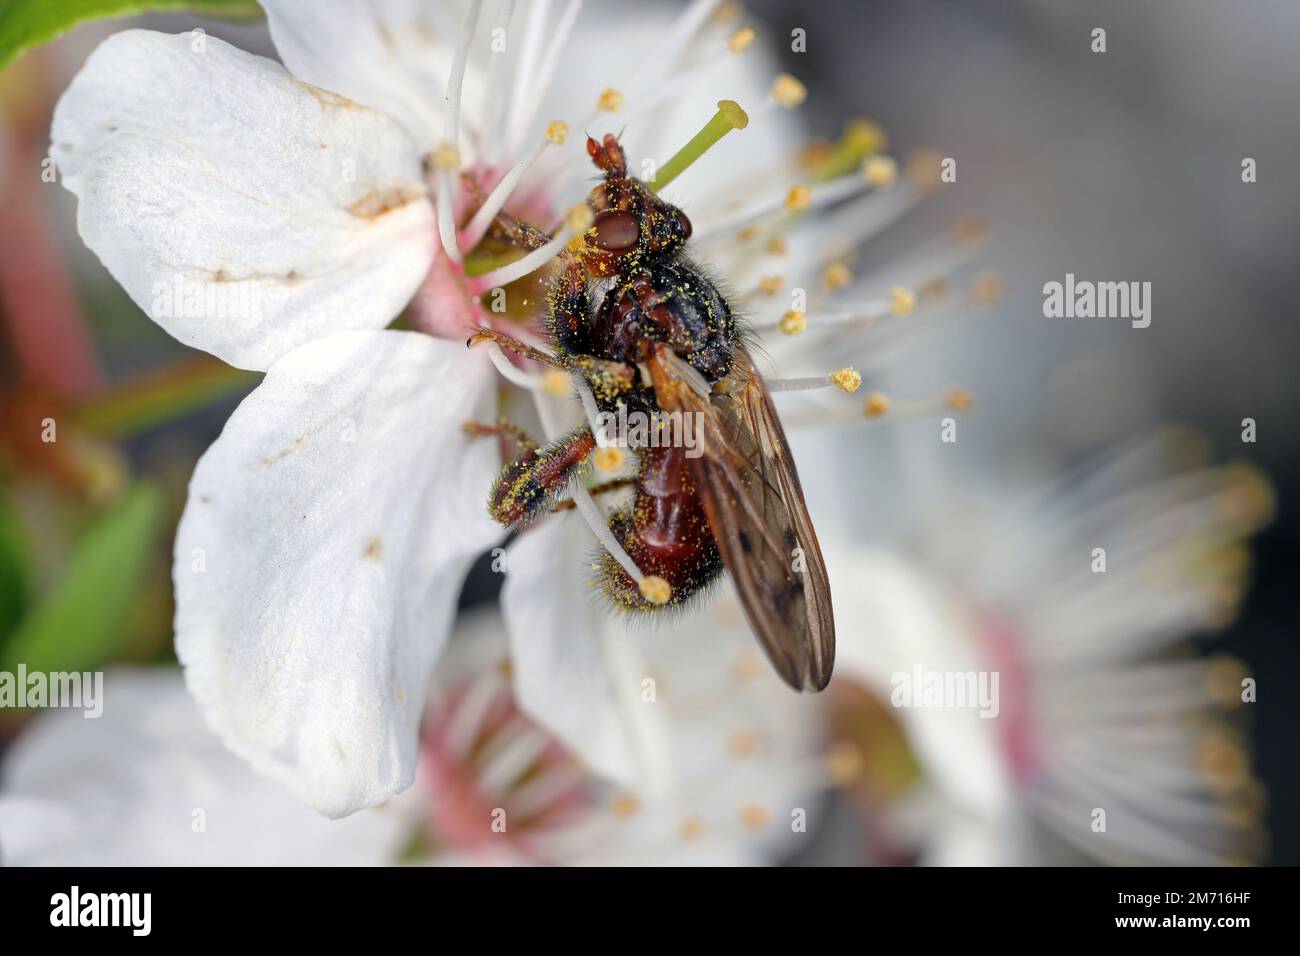 Myopa testacea conopid Fly. Mouche brune qui chasse et paralyse les abeilles, dans la famille des Conopidae. Un insecte qui se nourrit du pollen de la prune mirabelle. Banque D'Images